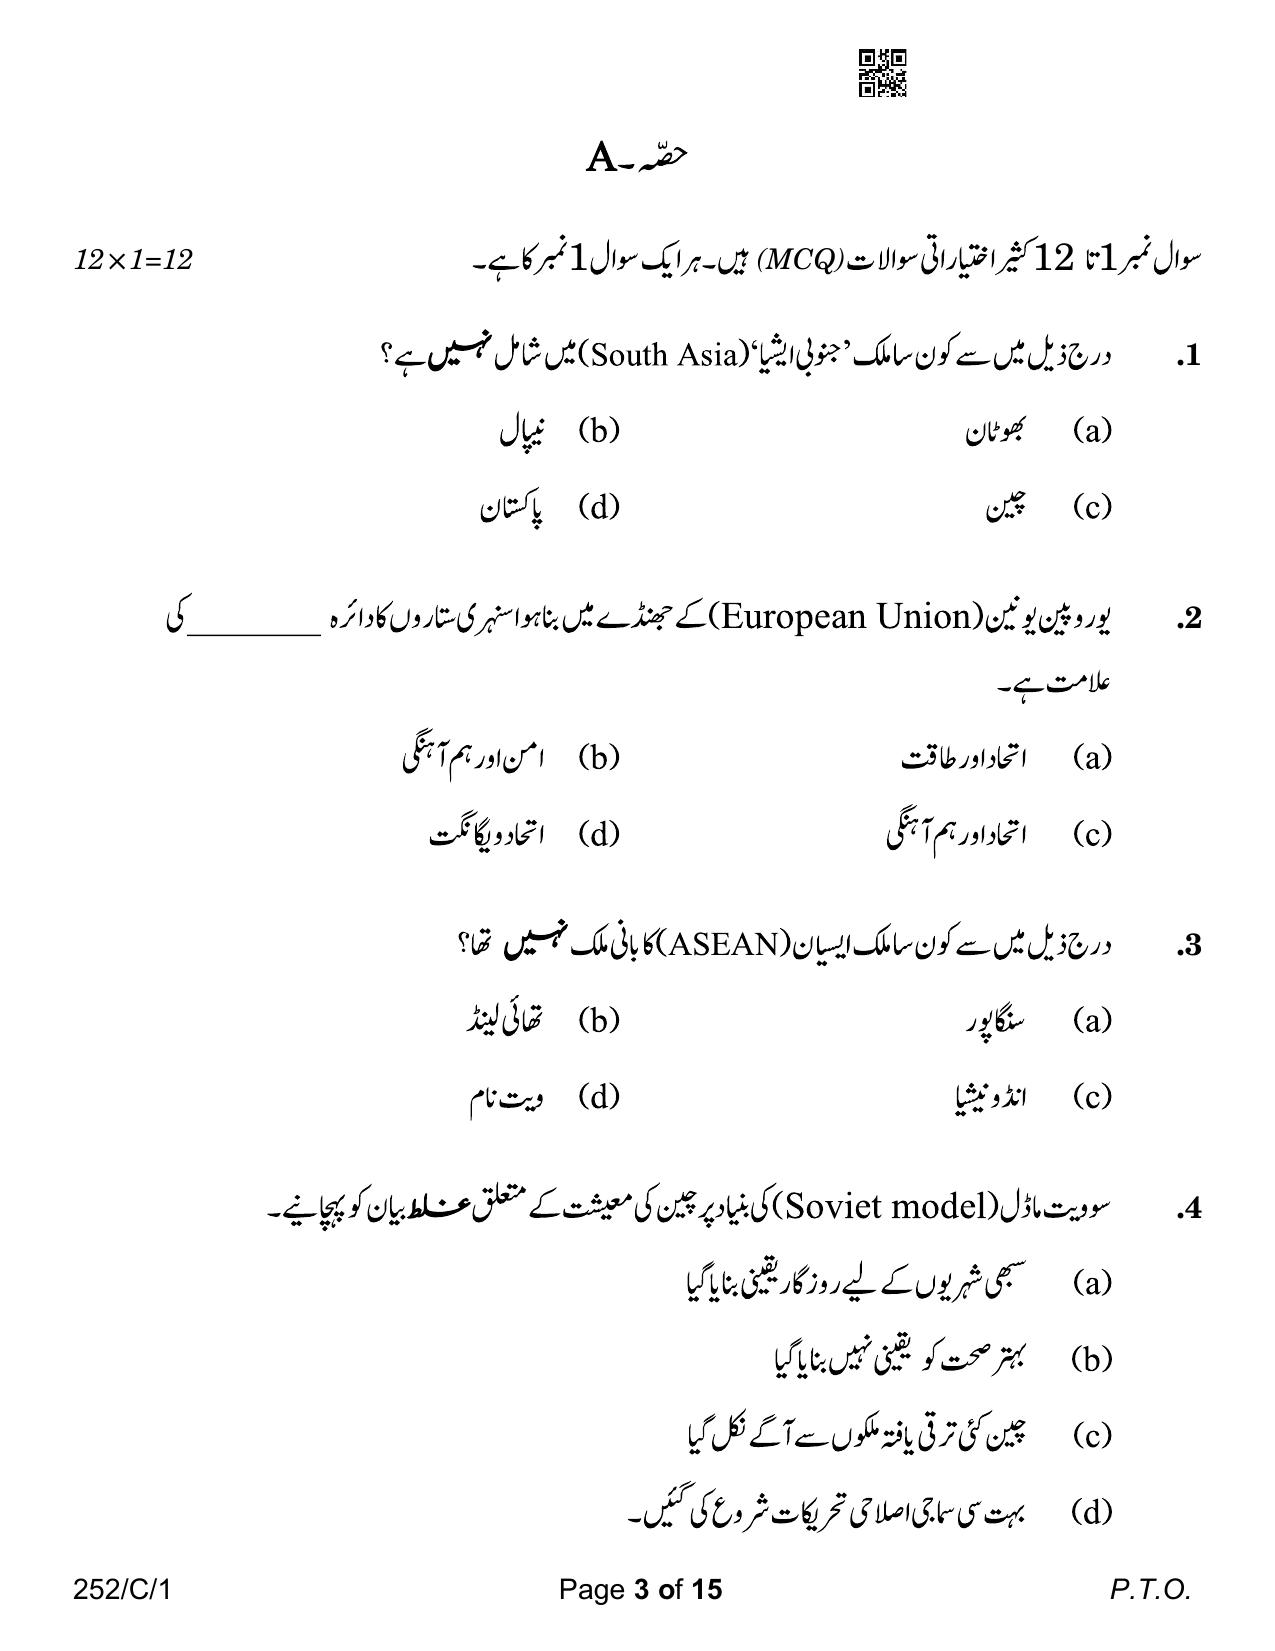 CBSE Class 12 252-1 Political Science Urdu Version 2023 (Compartment) Question Paper - Page 3